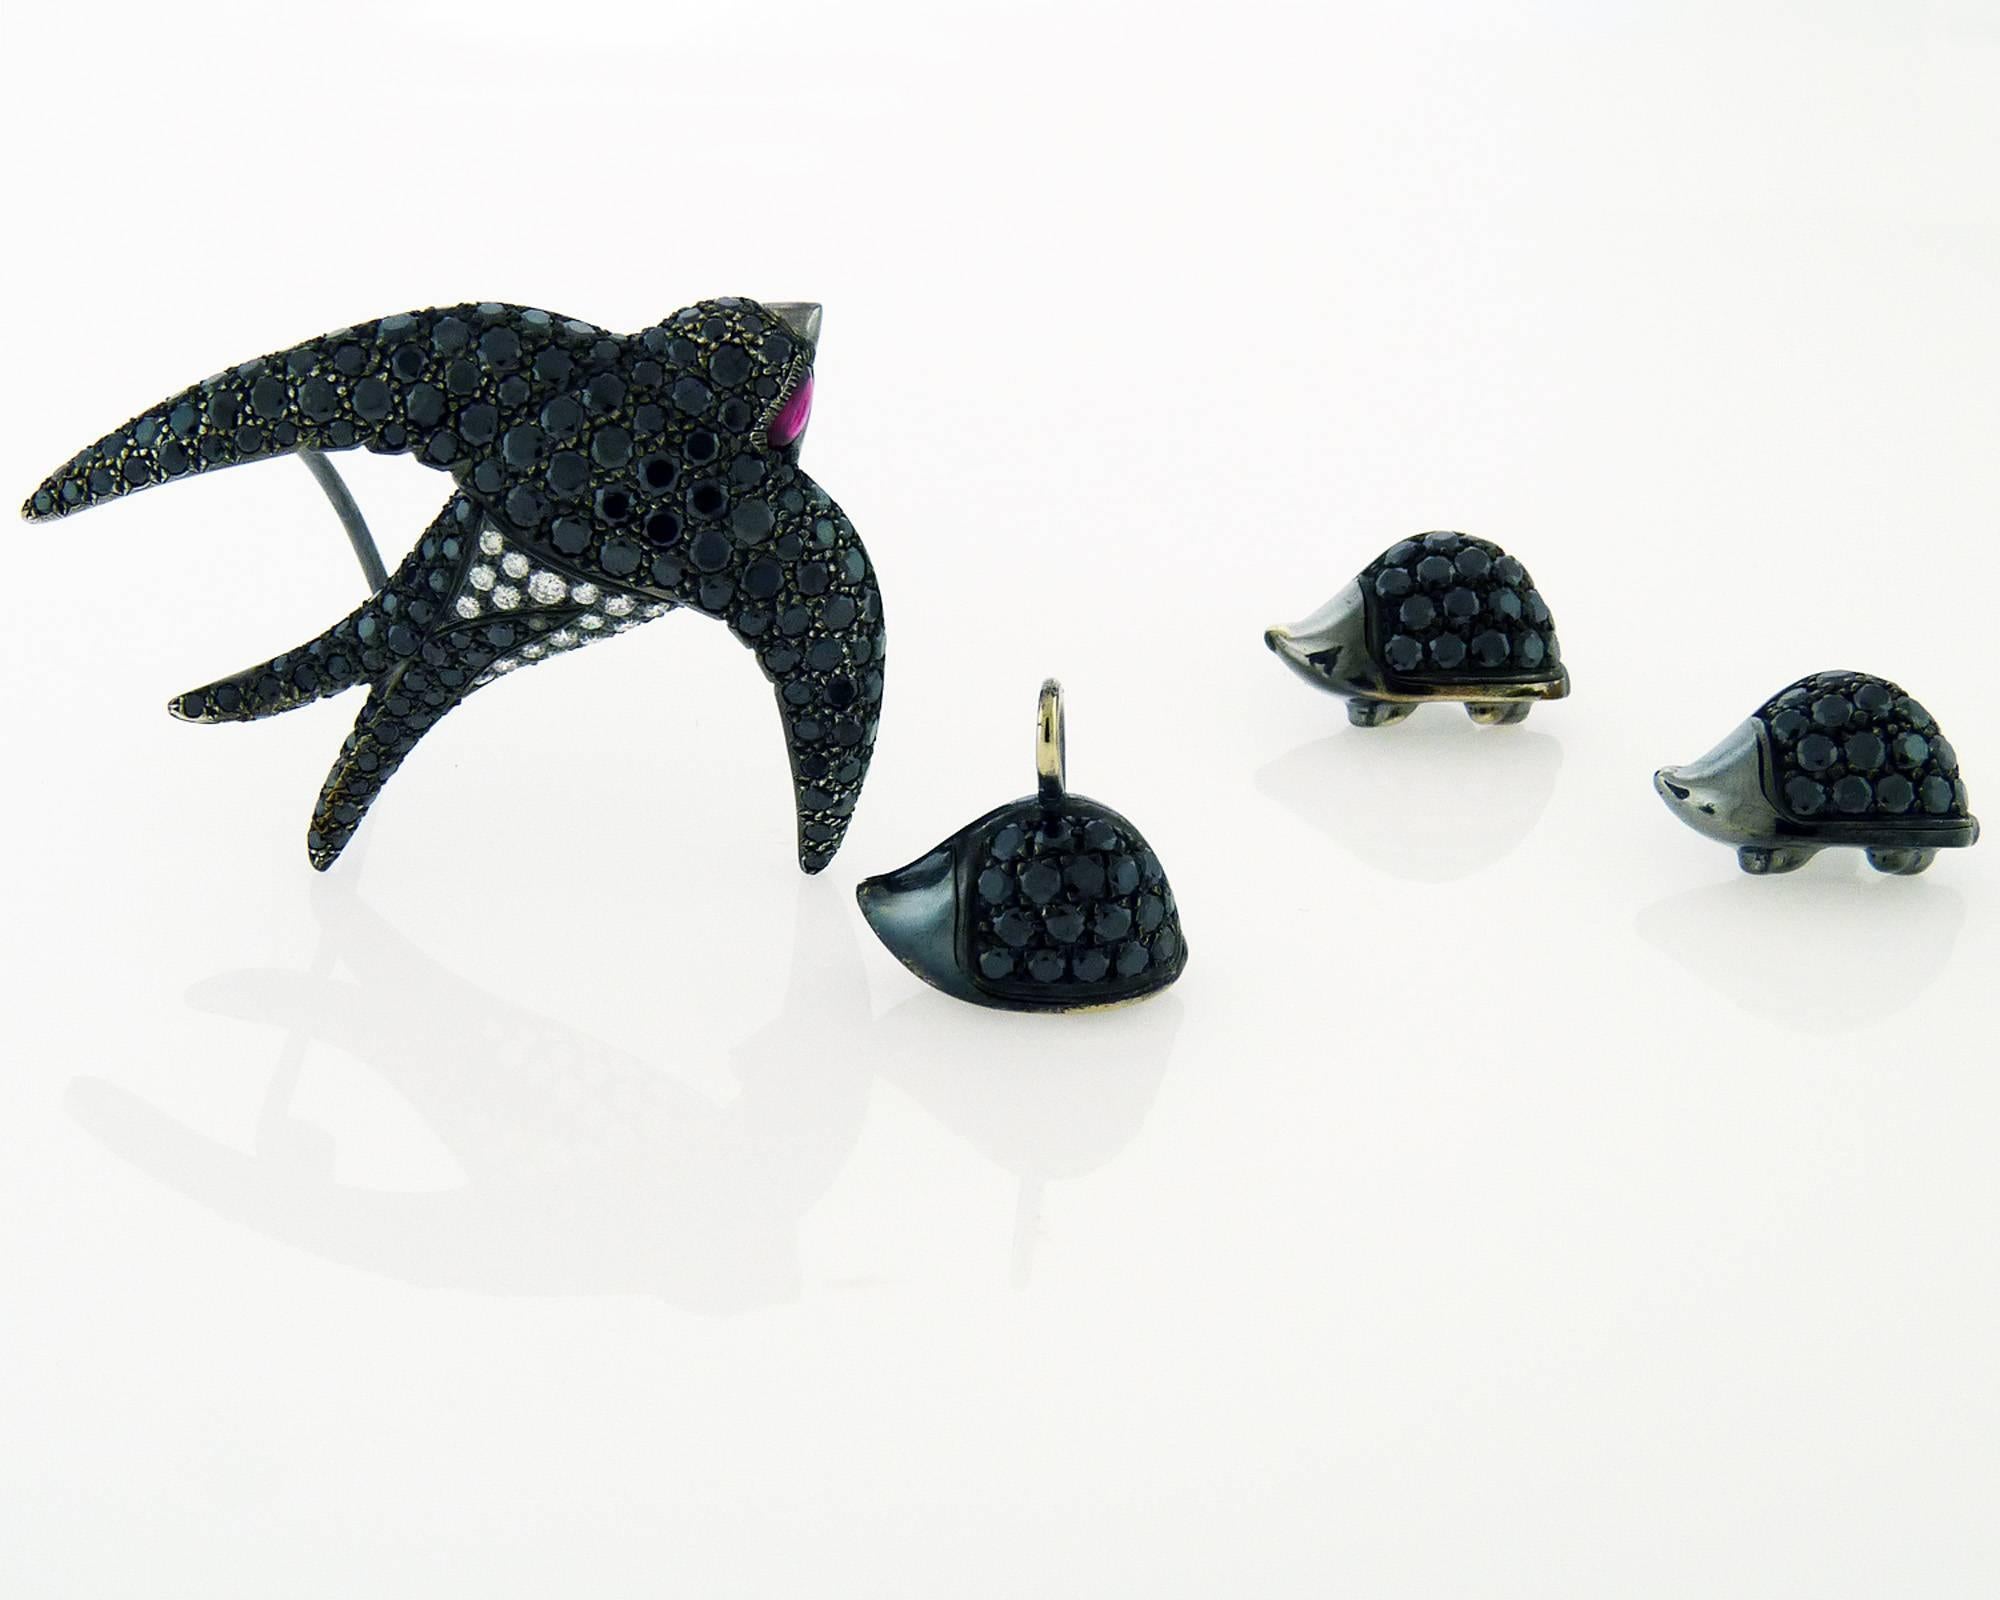 Un joli ensemble de boucles d'oreilles, pendentif et broche en diamant noir, par De Grisogono.
L'ensemble comprend des boucles d'oreilles et un pendentif en forme de hérisson,  et une broche en forme de mouette.
Les boucles d'oreilles et le